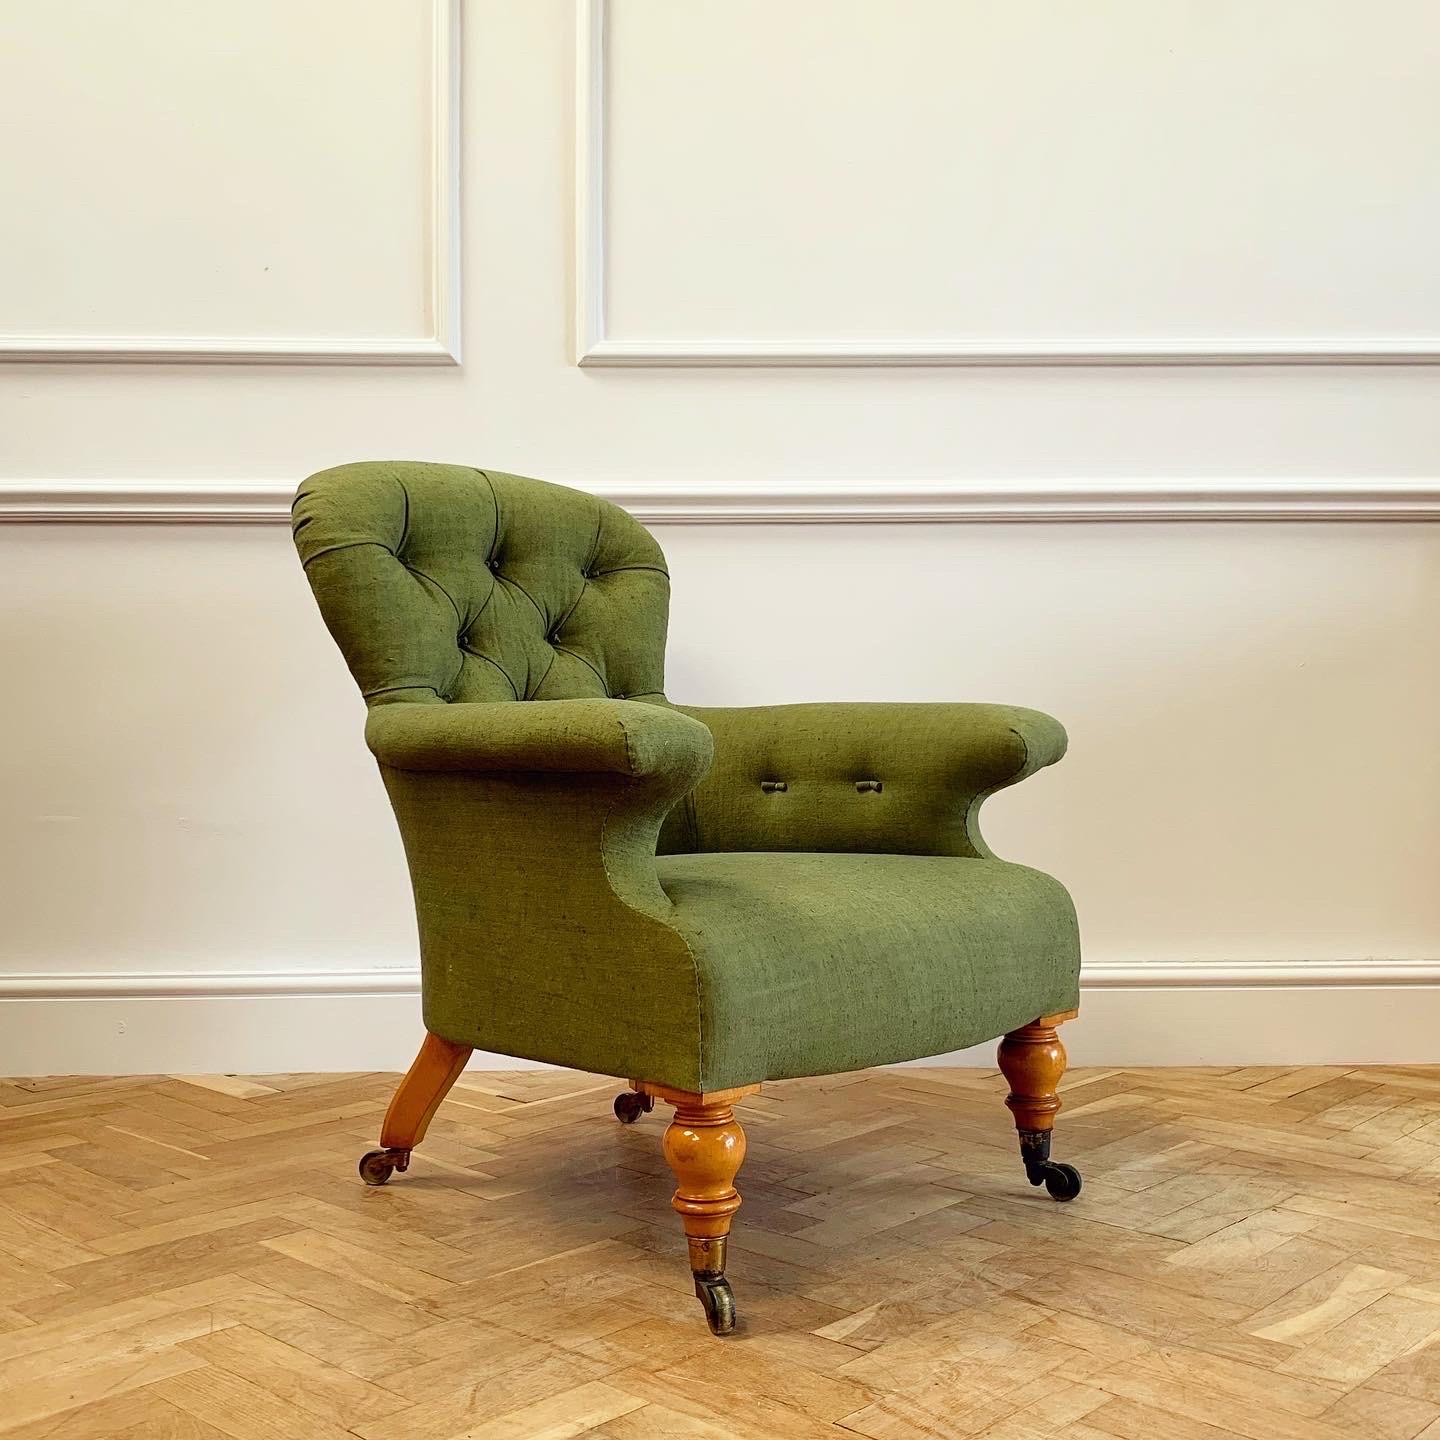 Ein eleganter gepolsterter Sessel von Hindley & Sons mit Beinen aus satiniertem Holz, neu bezogen mit natürlich gefärbtem, antikem Leinen in Flaschengrün.

Englisch, Anfang des neunzehnten Jahrhunderts.